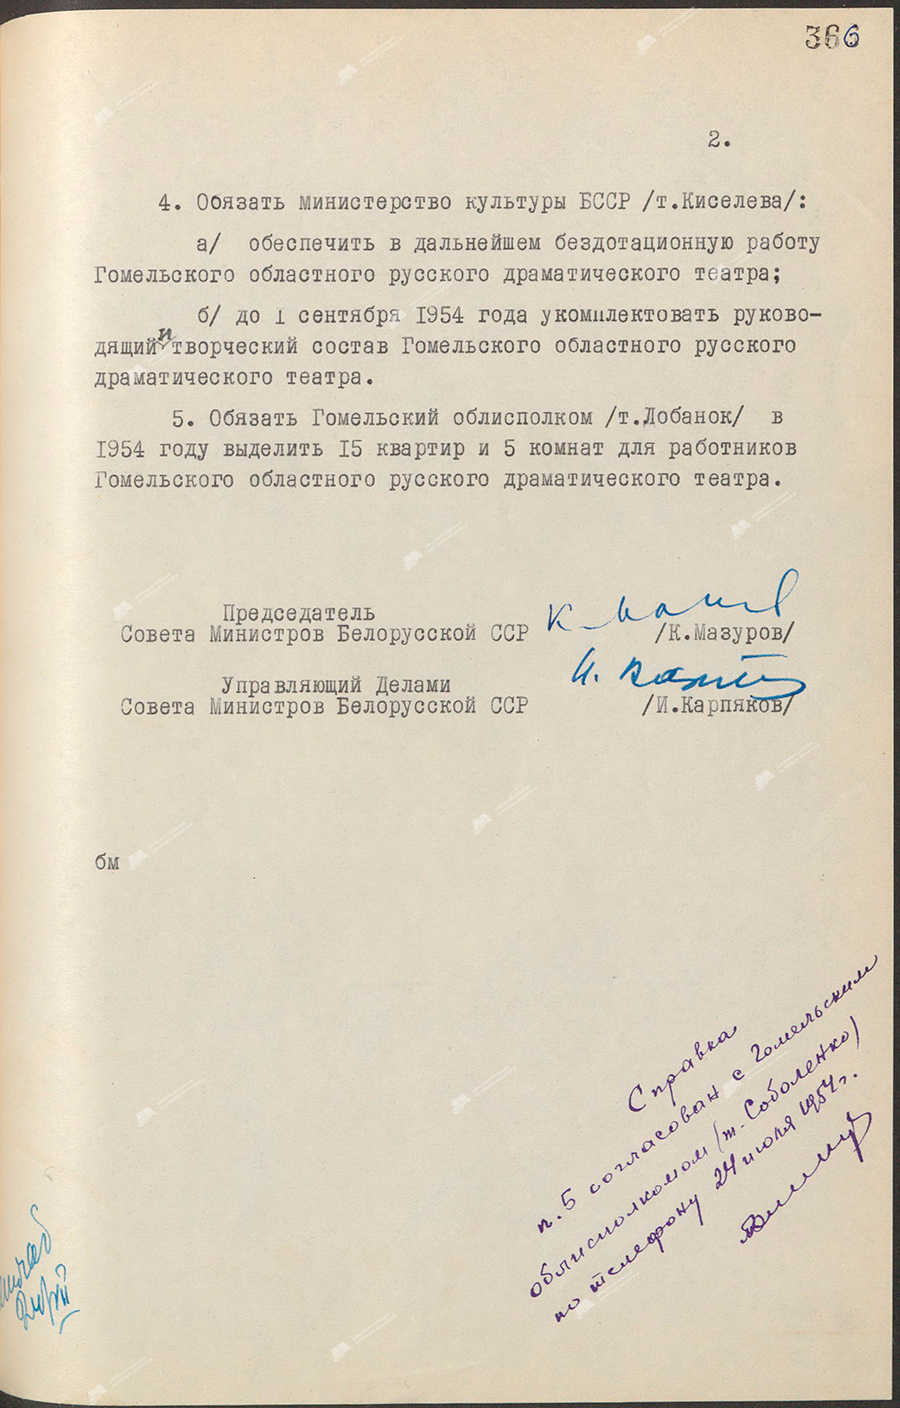 Beschluss Nr. 697 des Ministerrats der Weißrussischen SSR «Über die Organisation des regionalen russischen Dramatheaters Gomel»-стр. 1